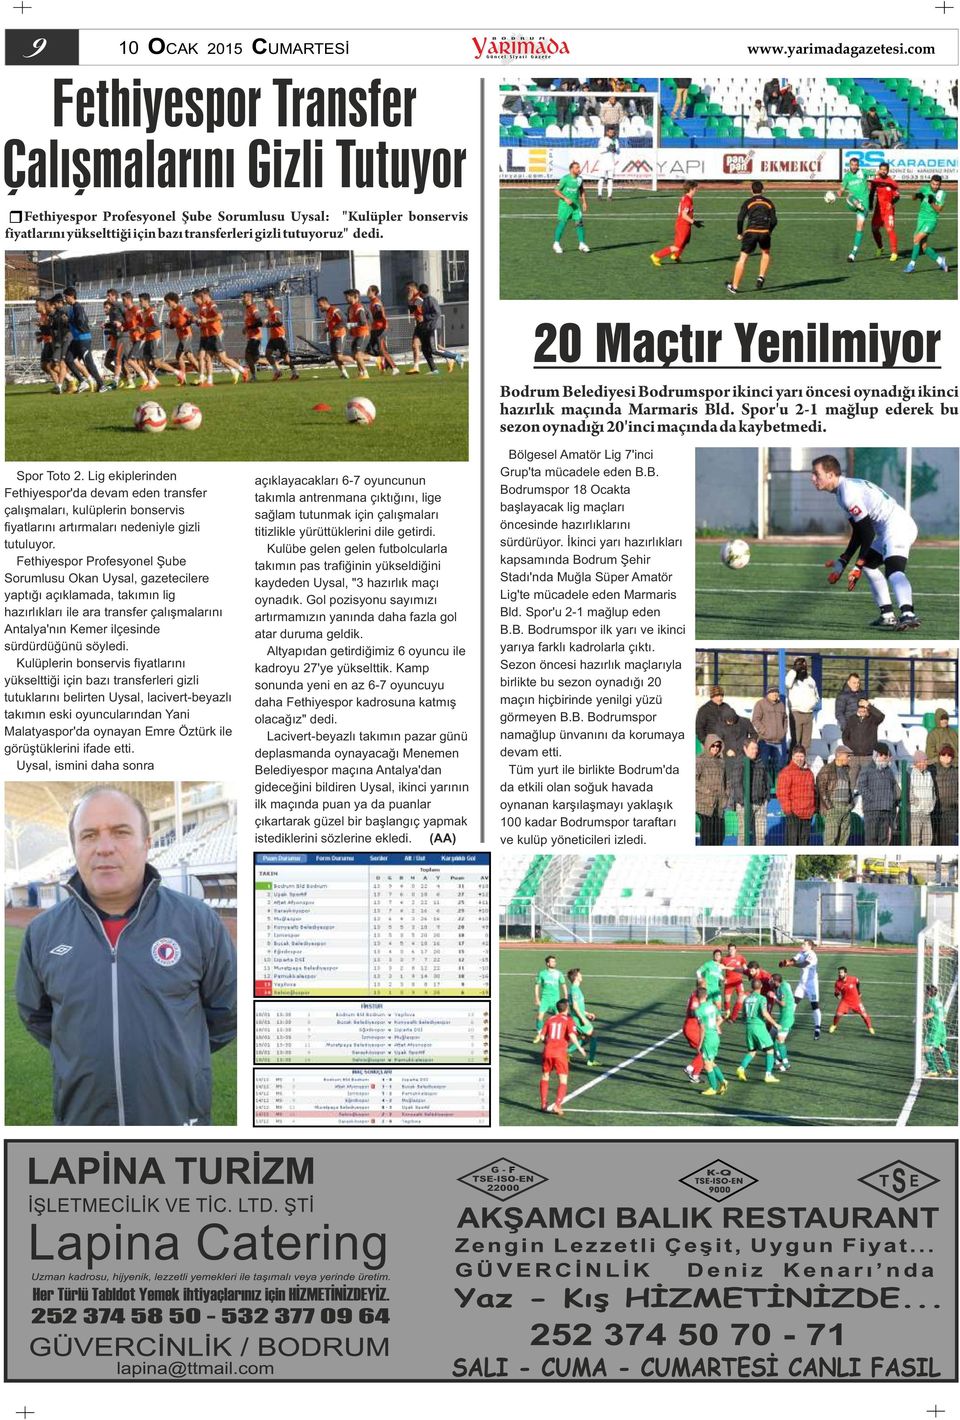 Spor Toto 2. Lig ekiplerinden Fethiyespor'da devam eden transfer çalışmaları, kulüplerin bonservis fiyatlarını artırmaları nedeniyle gizli tutuluyor.